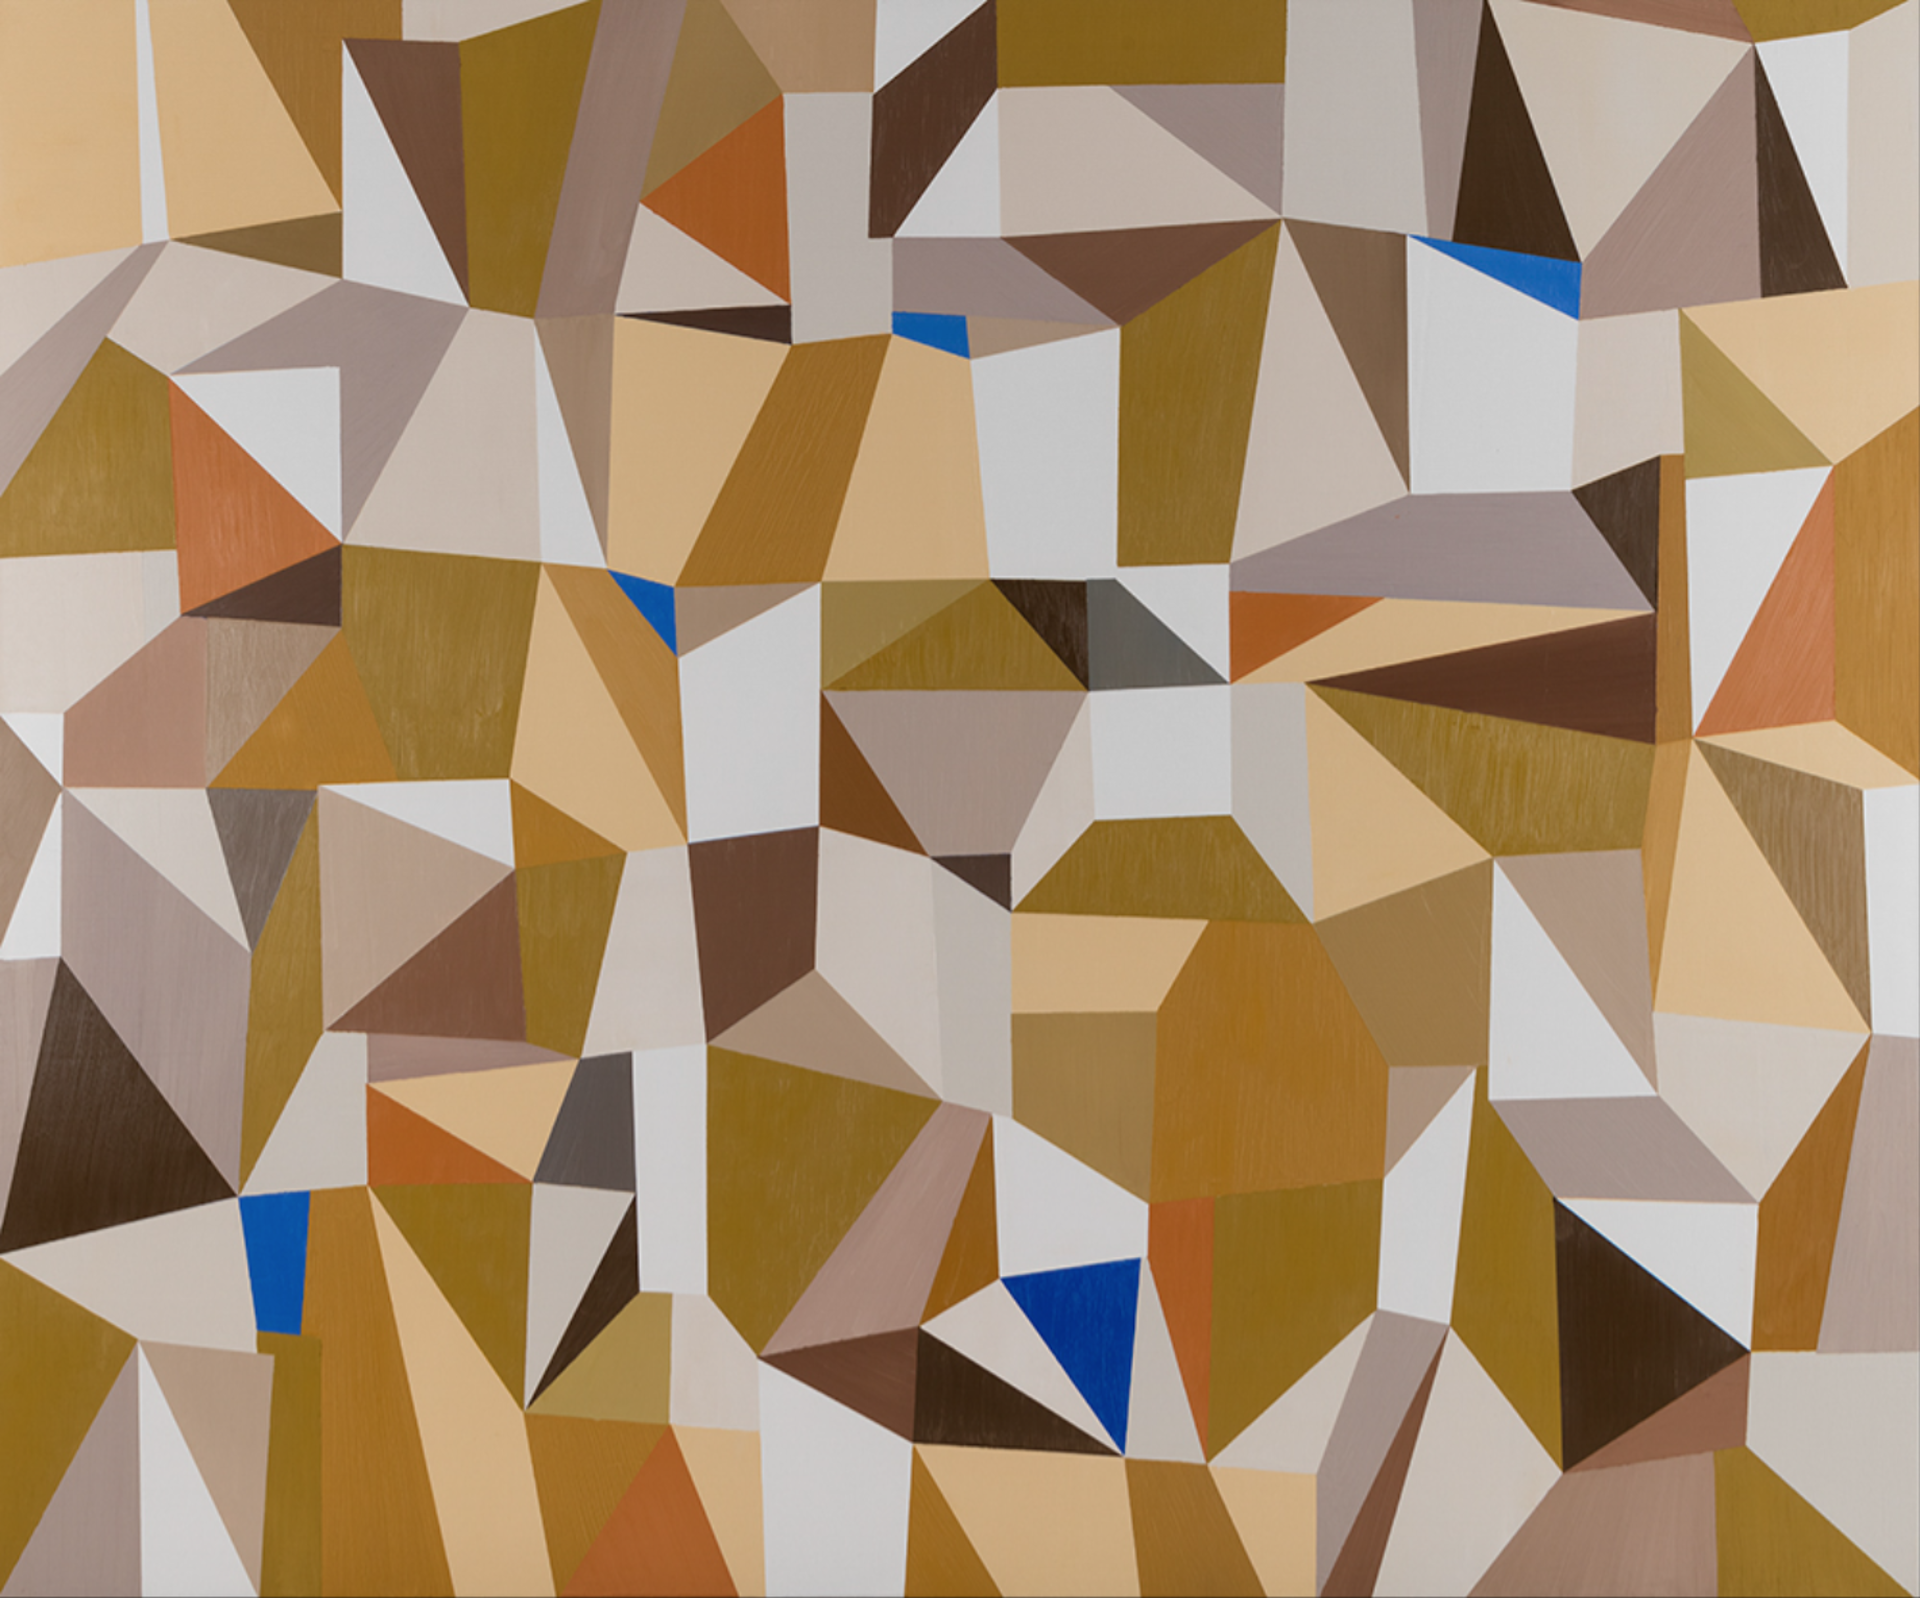 Mosaic 1 by Jeff Long